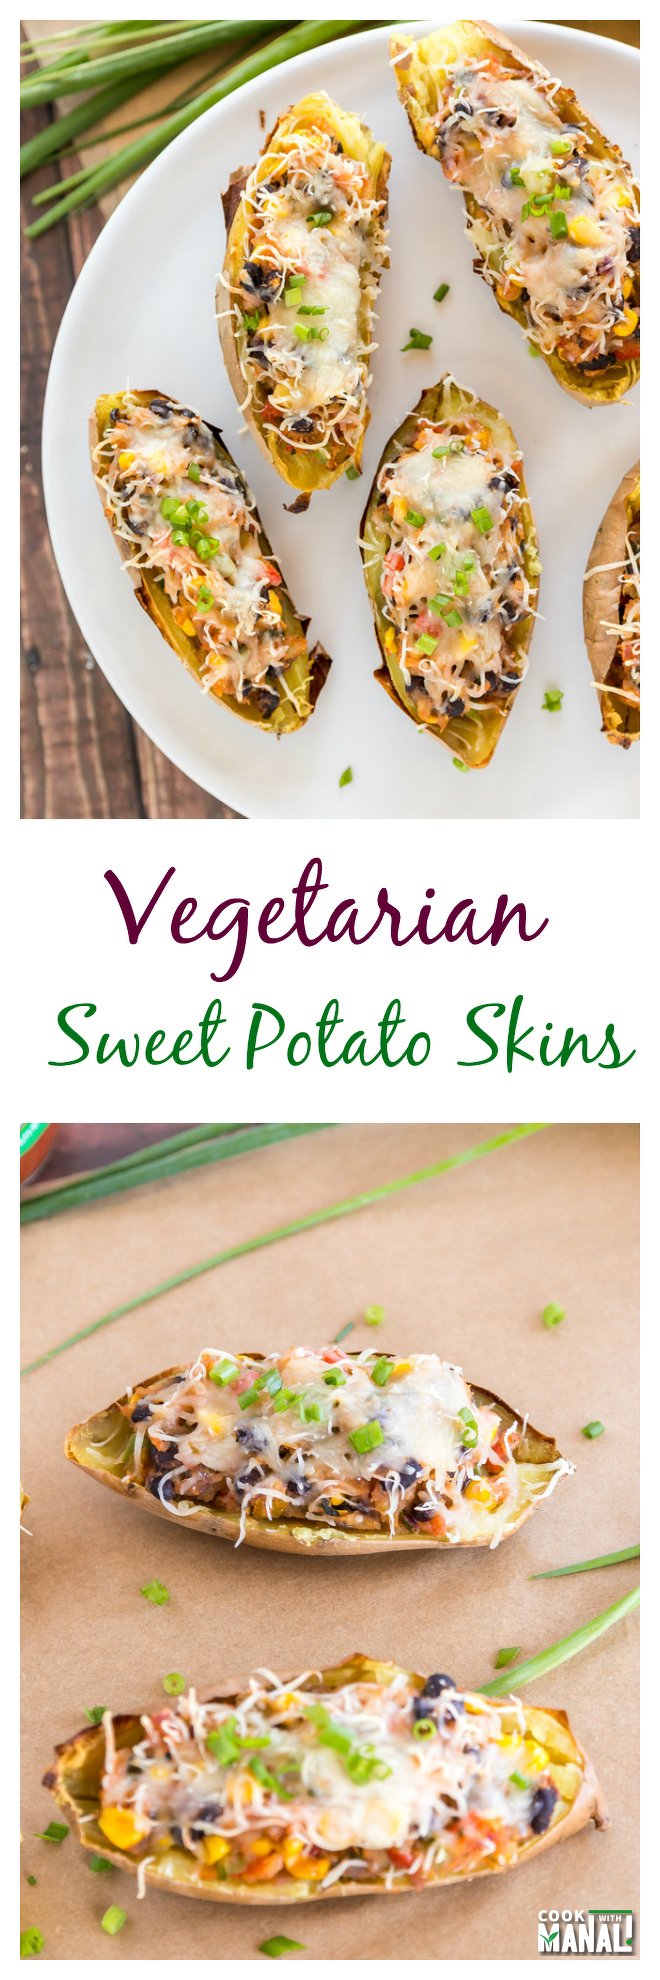 Vegetarian Sweet Potato Skins Collage